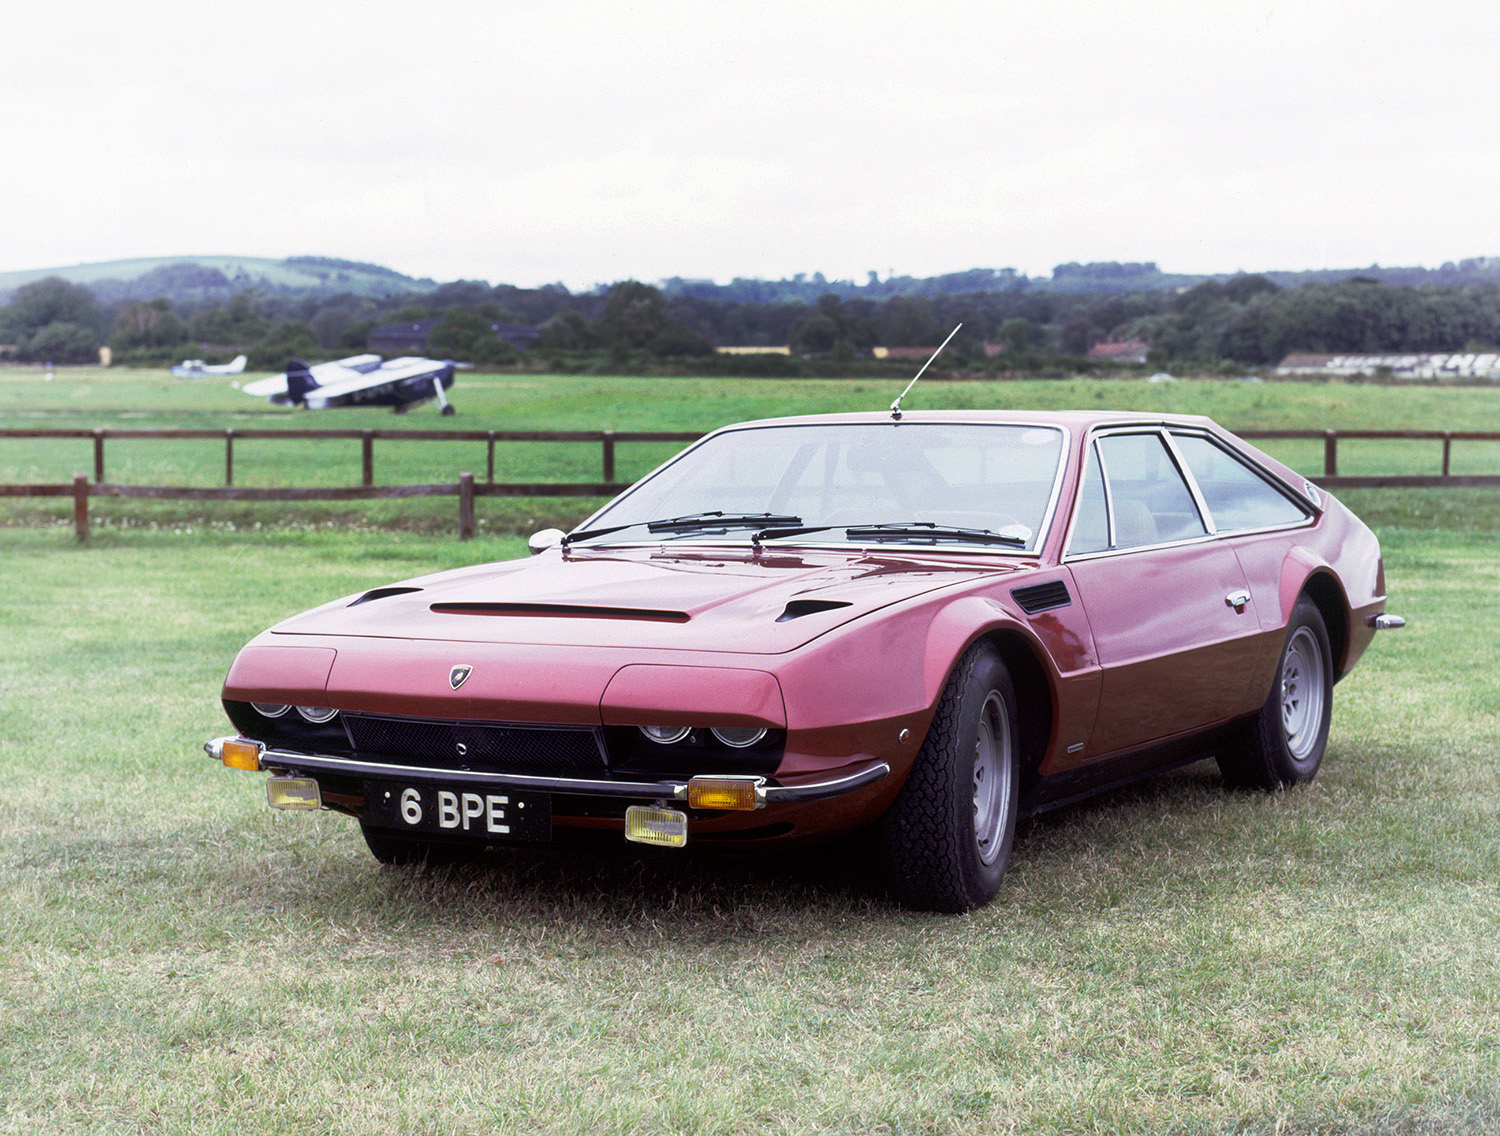 Classic 1973 Lamborghini Jarama model sitting in a grass field